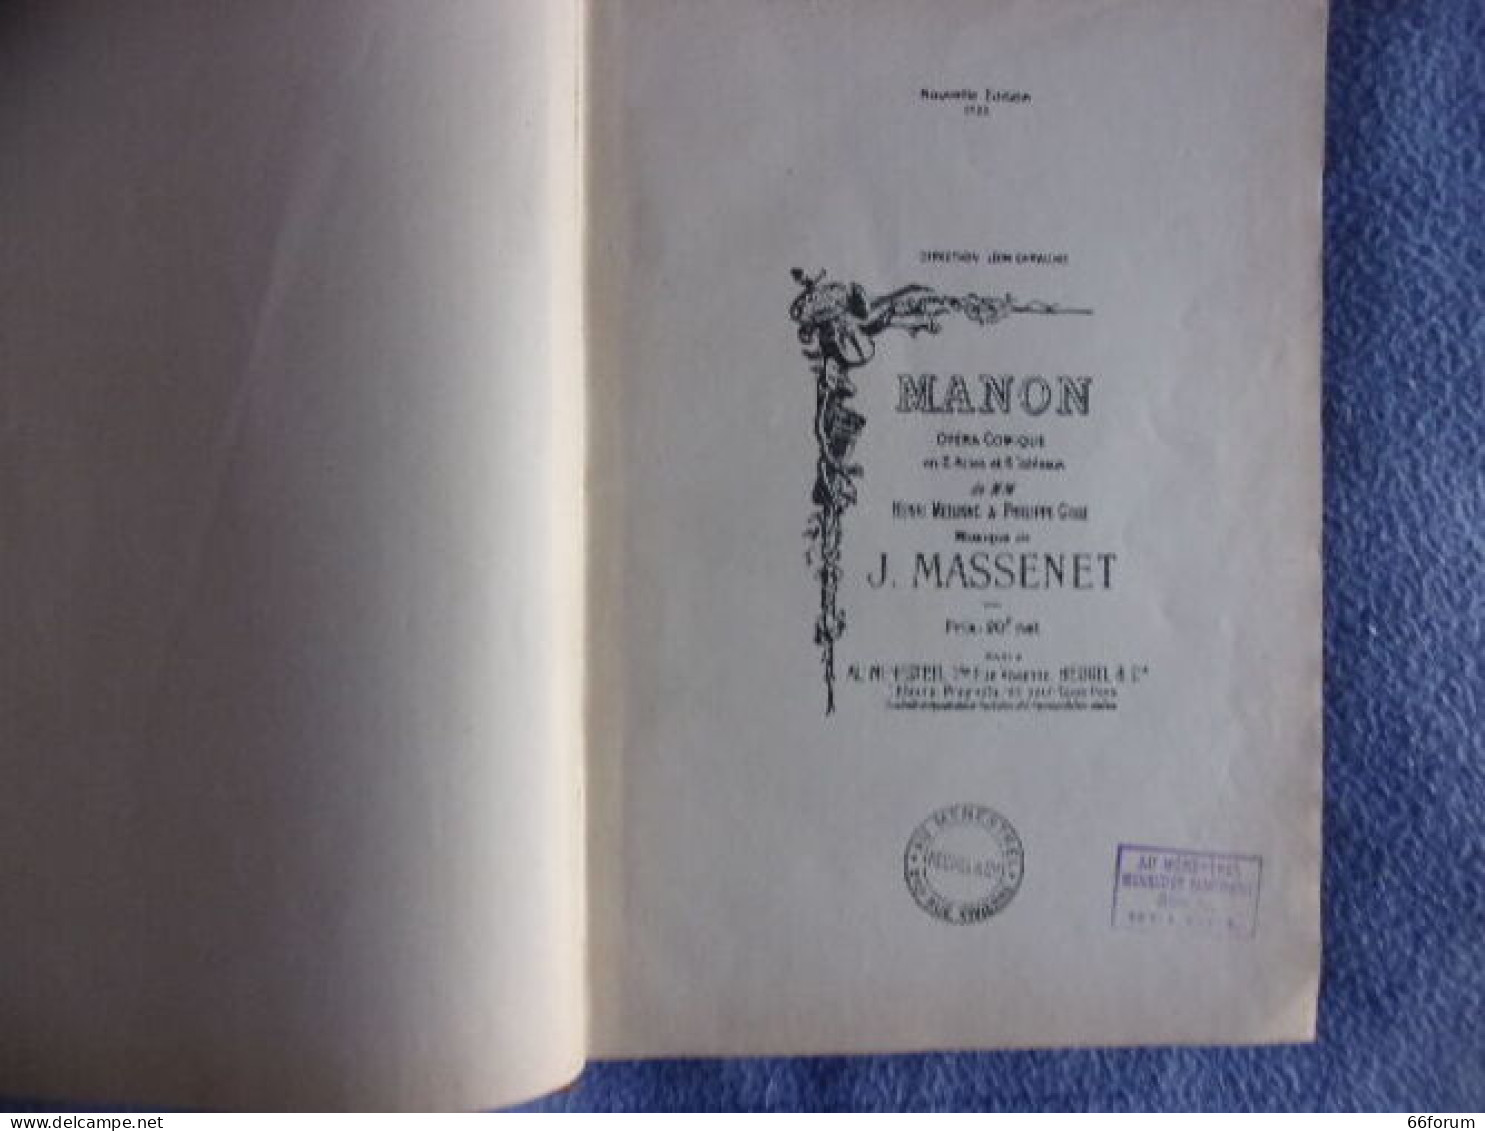 Manon - Música